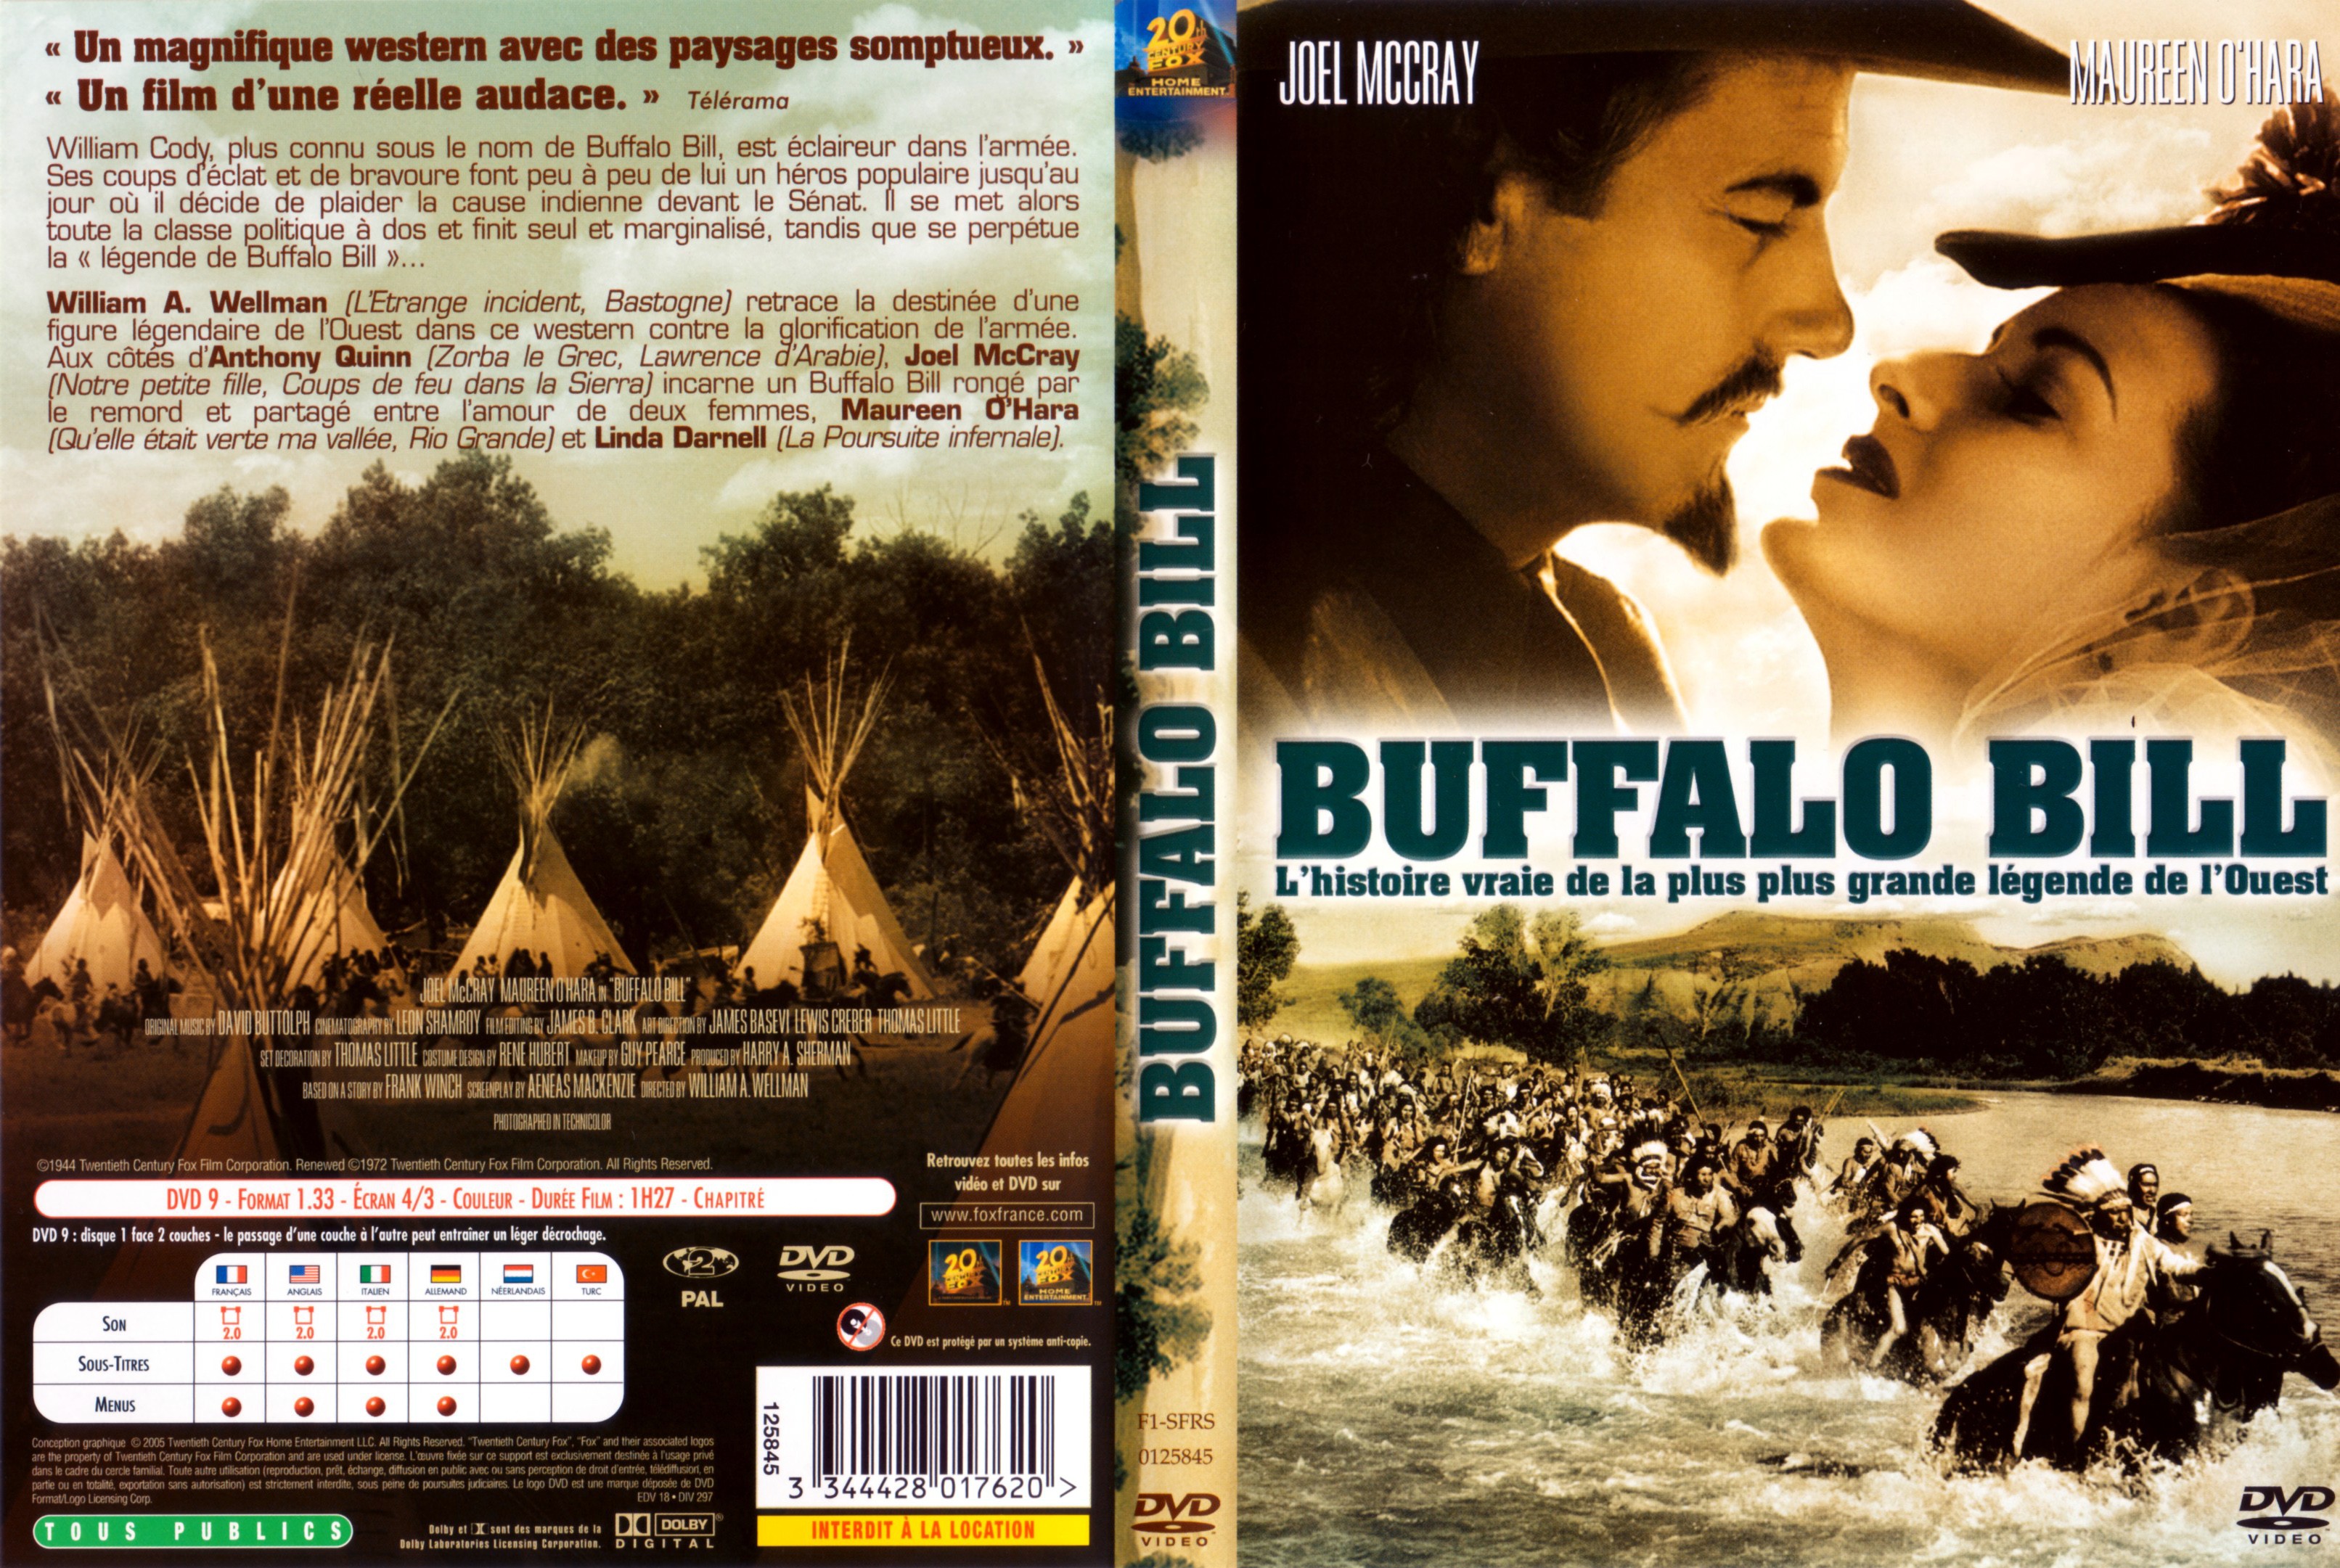 Jaquette DVD Buffalo Bill